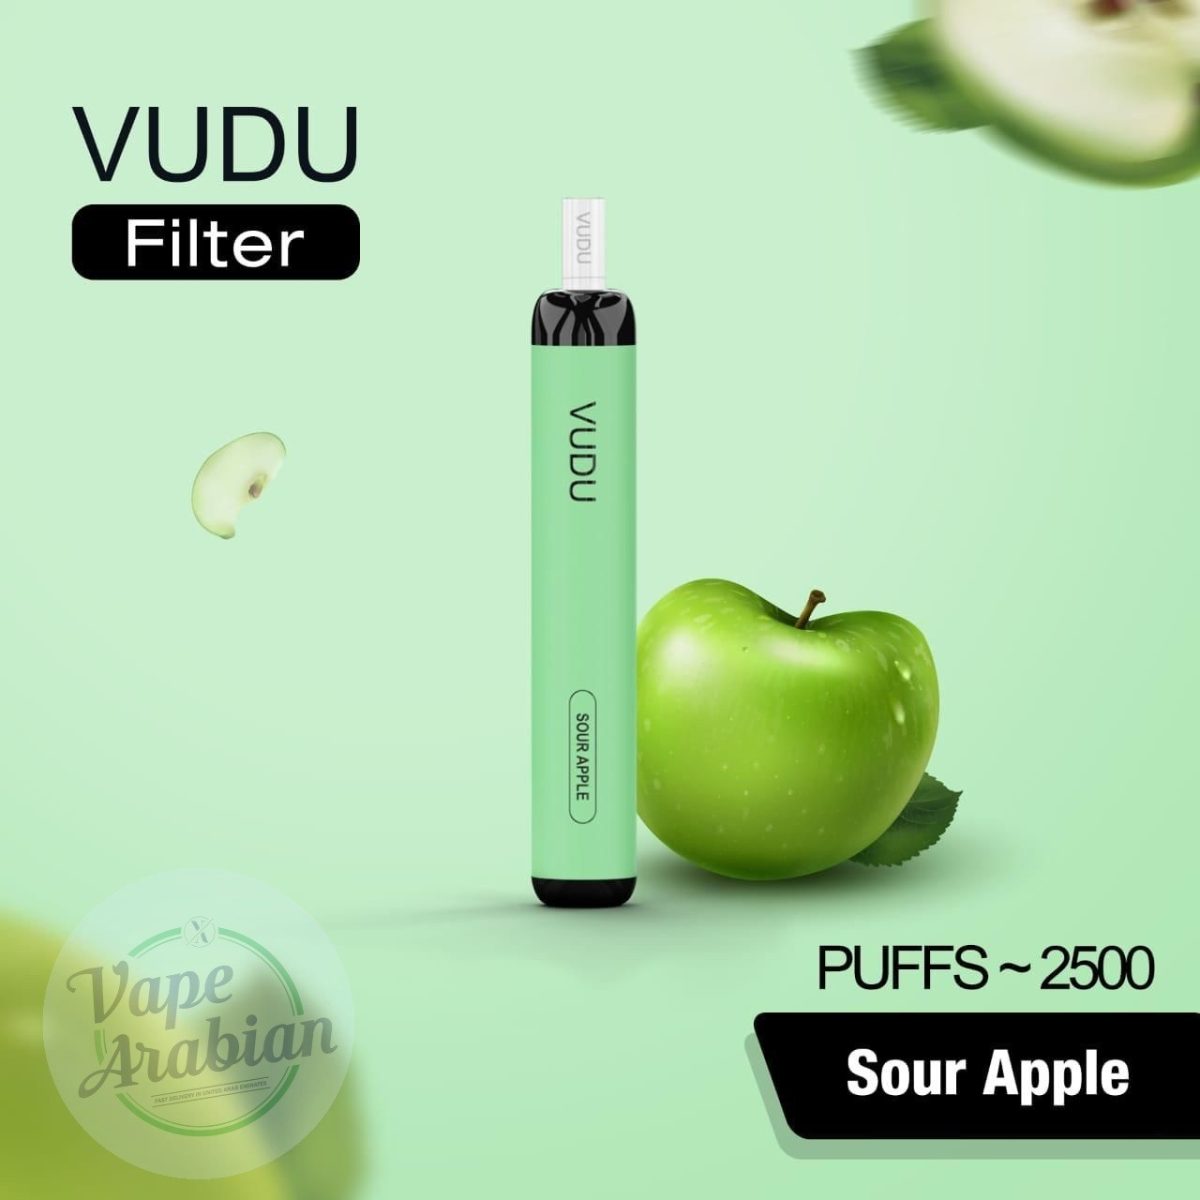 VUDU Filter Disposable 2500 Puffs- Sour Apple